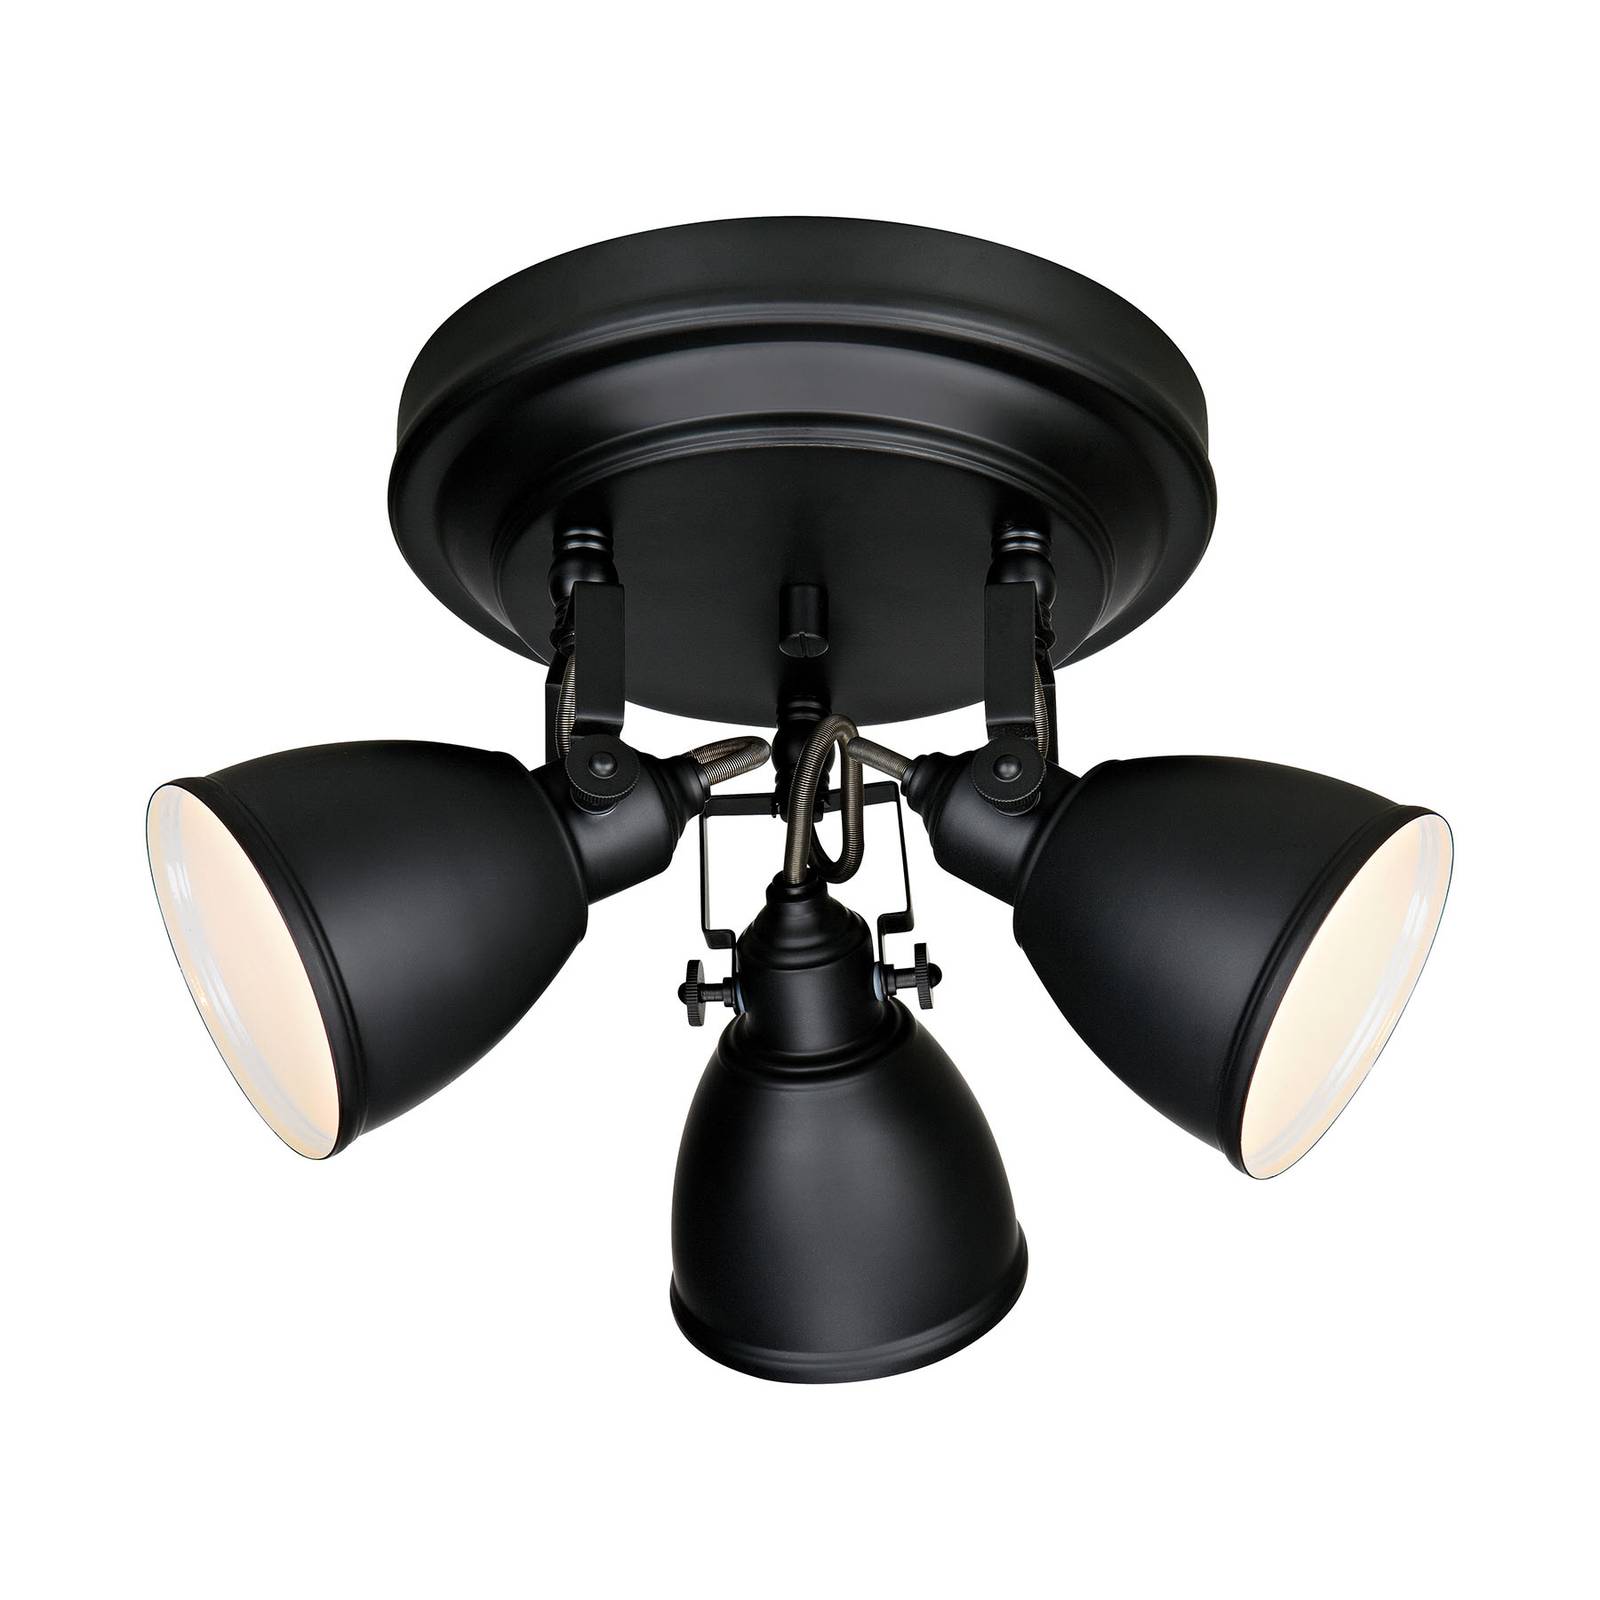 Plafondlamp Fjällbacka, 3-lamps, zwart